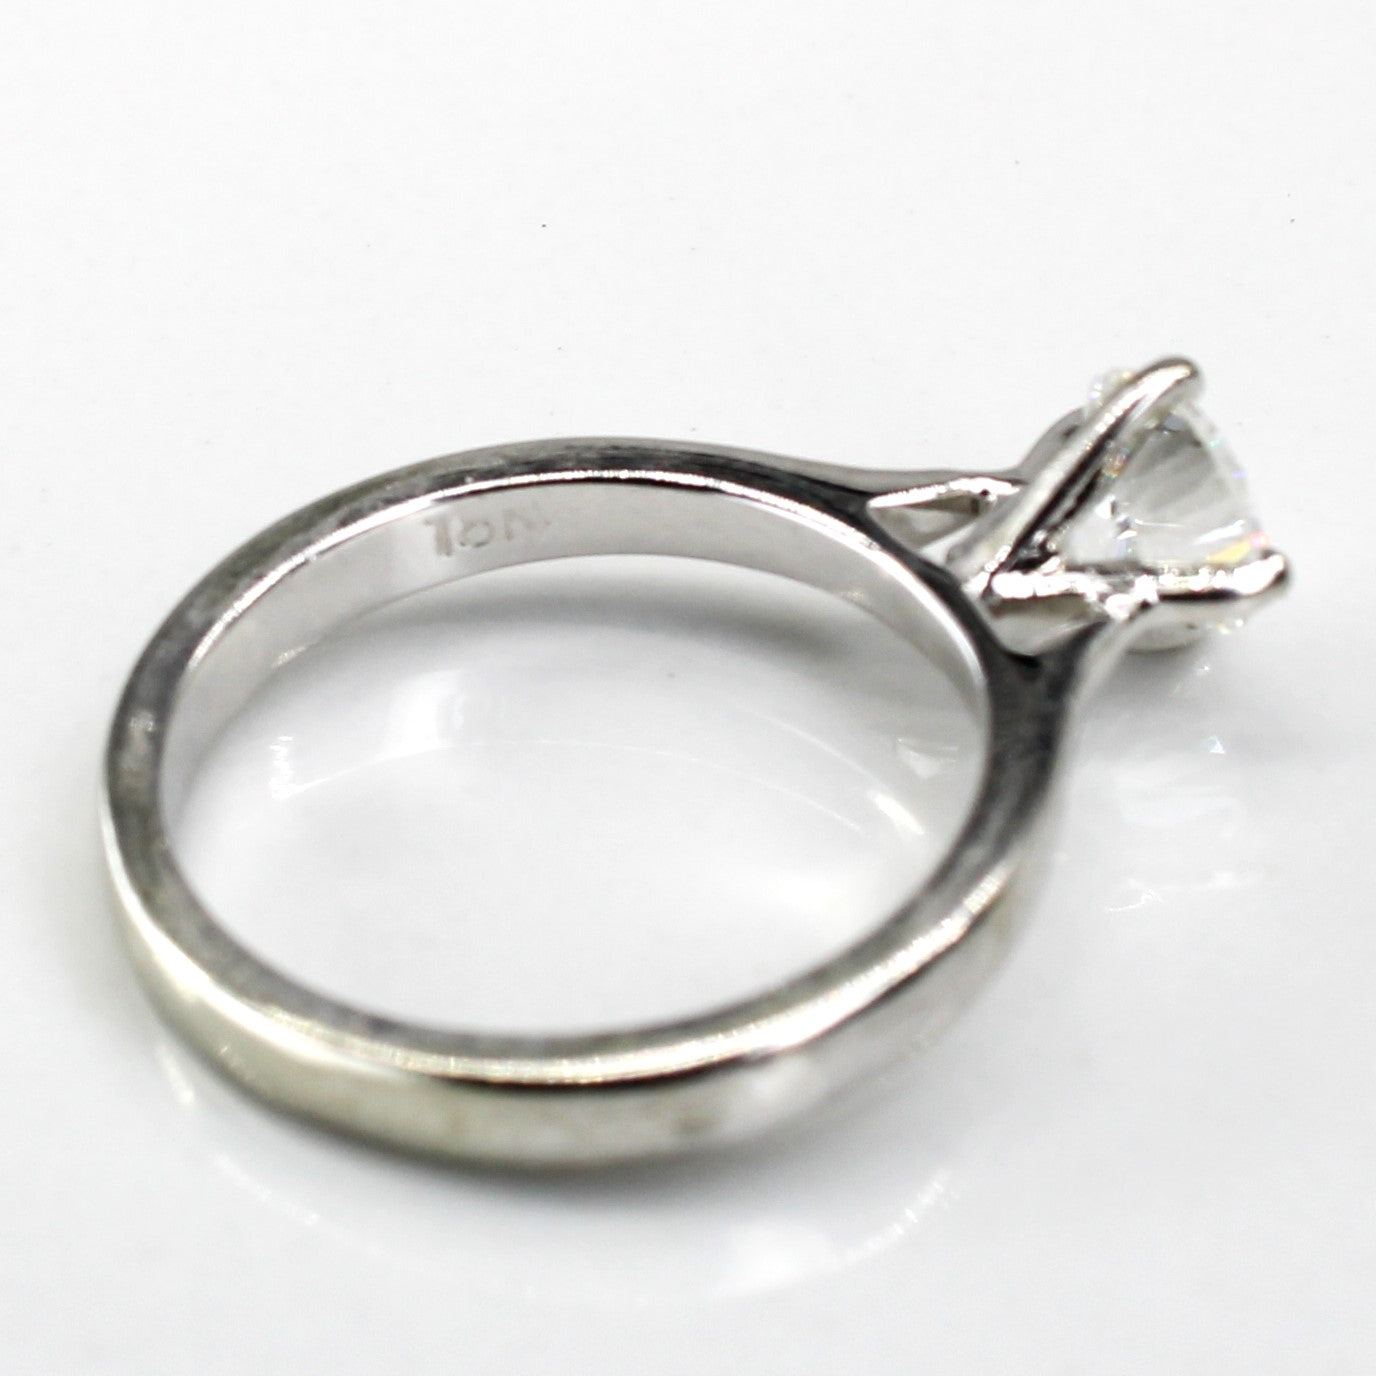 Solitaire Diamond Engagement Ring | 0.60ct VVS2 H | SZ 3.75 |